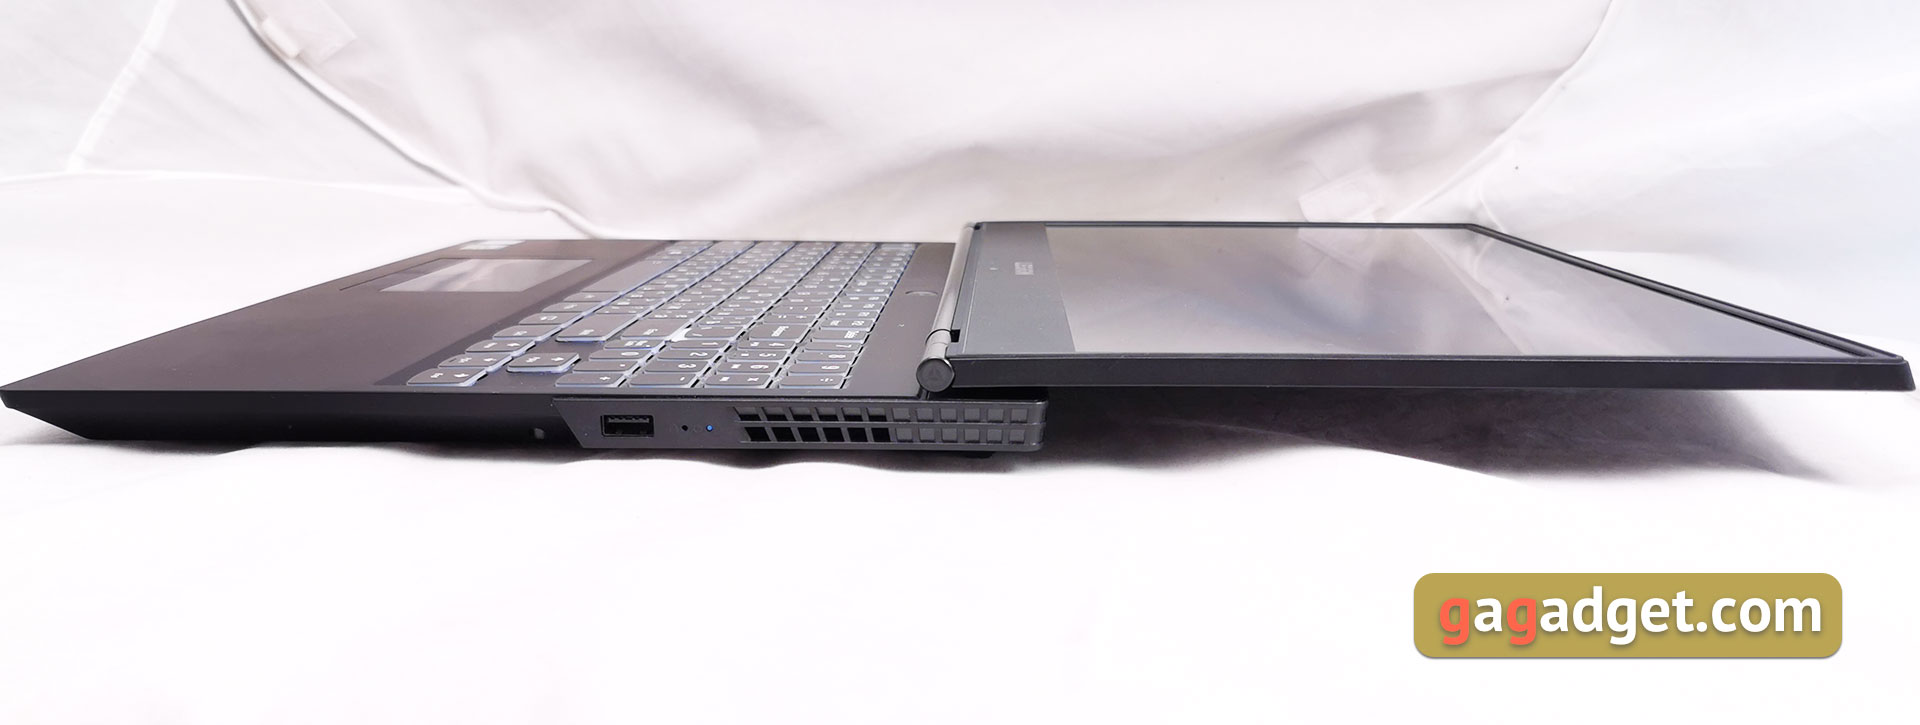 Обзор Lenovo Legion Y530: игровой ноутбук со строгим дизайном-21